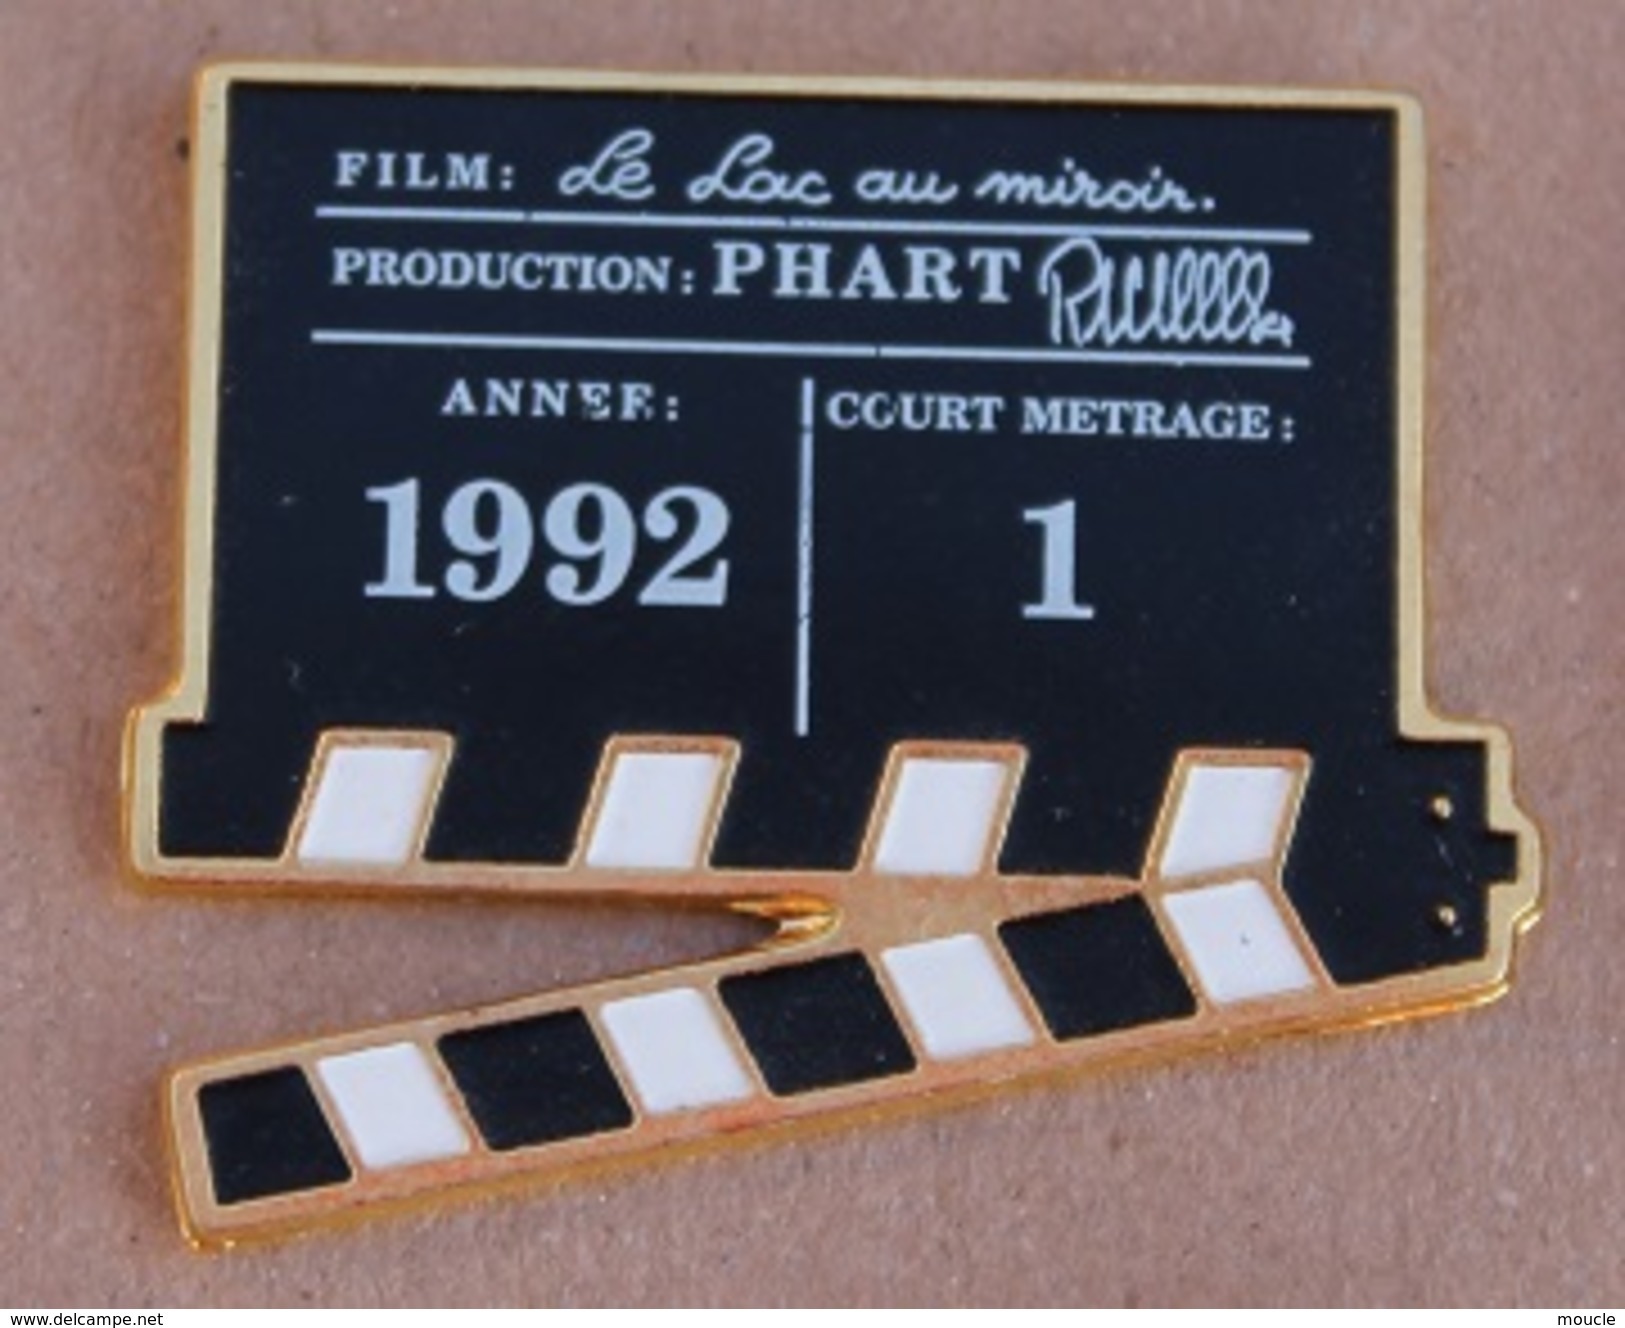 CLAP DE REALISATEUR - CINEMA - FILM - LE LAC AU MIROIR - PRODUCTION PHART - 1992 - COURT METRAGE 1   -  (16) - Cinéma